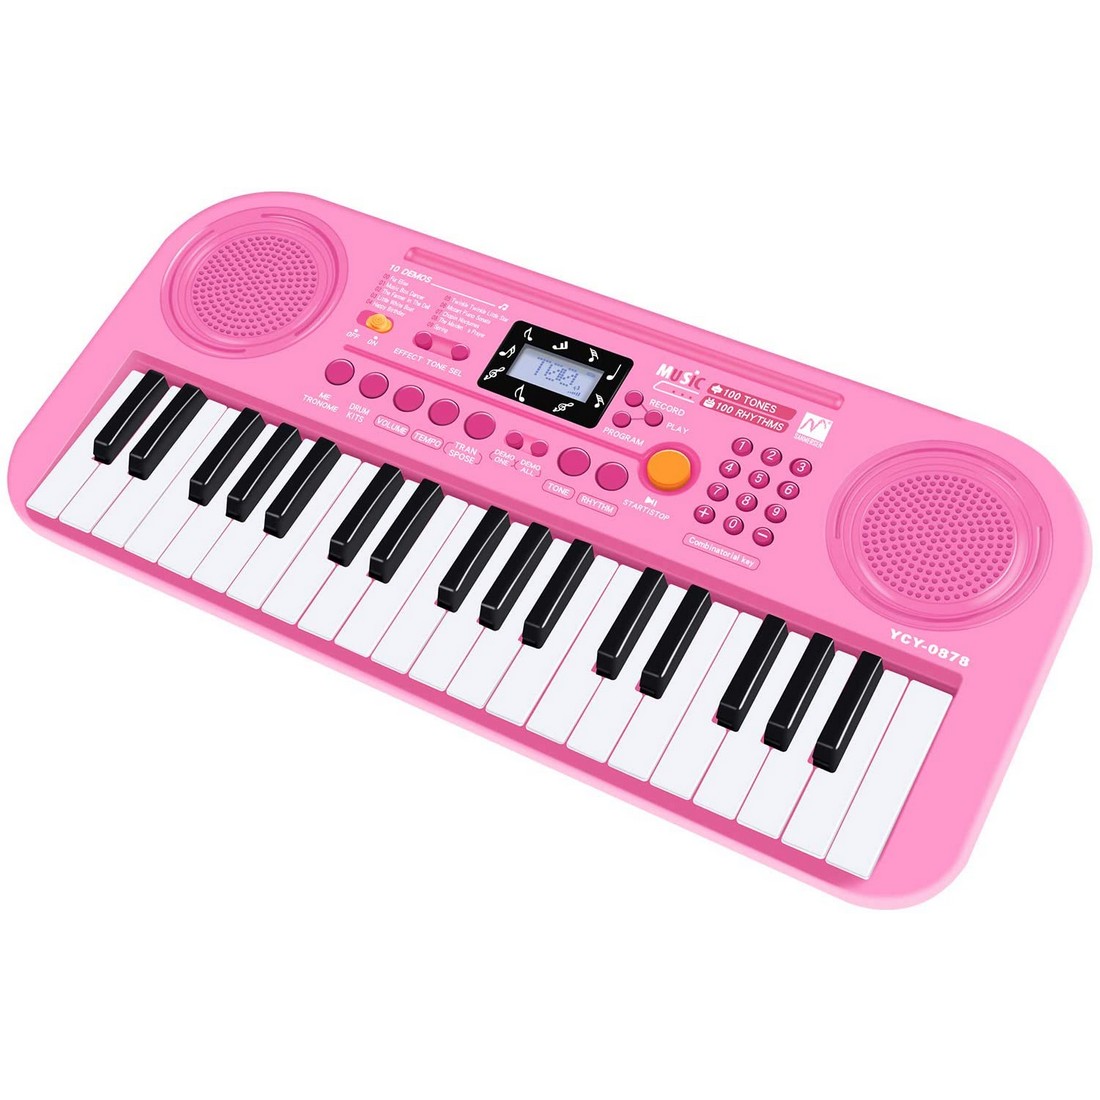 電子キーボード 37鍵盤 ピアノ おもちゃ 100種類音色 100種類リズム 10曲デモ レッスンモード 初心者向け 録音 再生機能 LCD液晶画面 USB給電式 電池給電式 楽譜付き ピンク